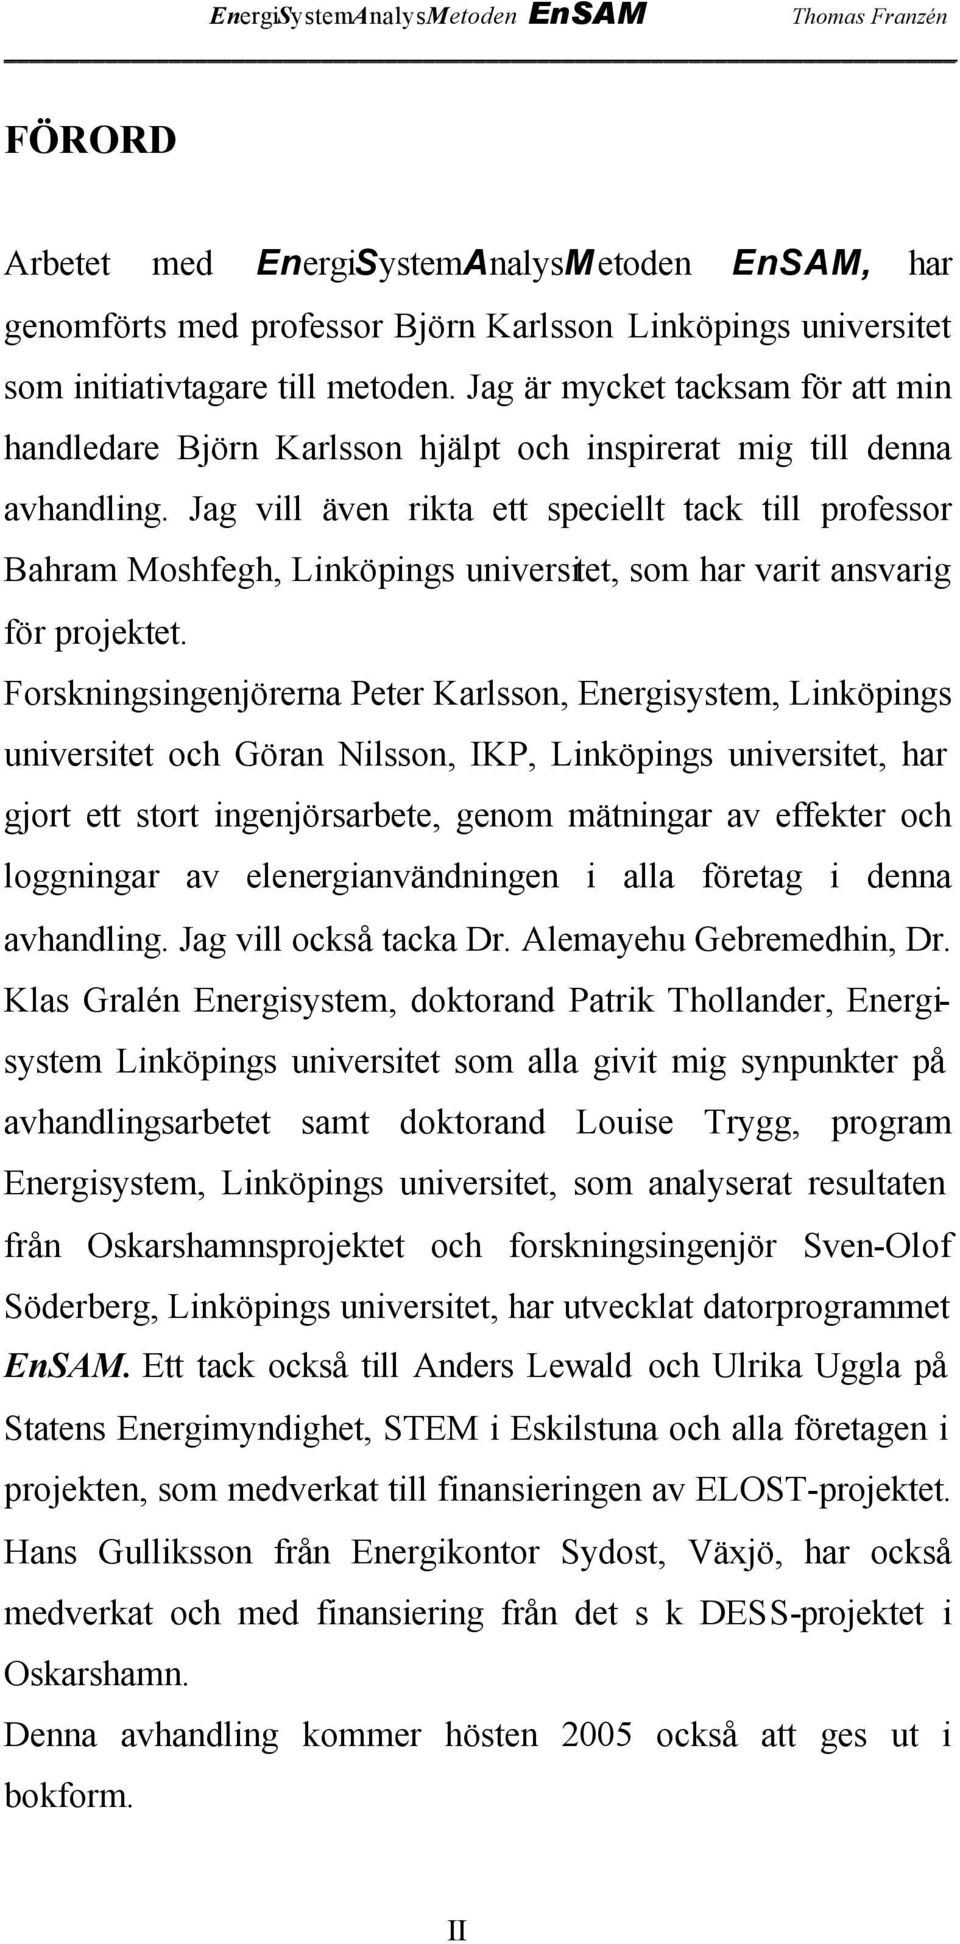 Jag vill även rikta ett speciellt tack till professor Bahram Moshfegh, Linköpings universitet, som har varit ansvarig för projektet.